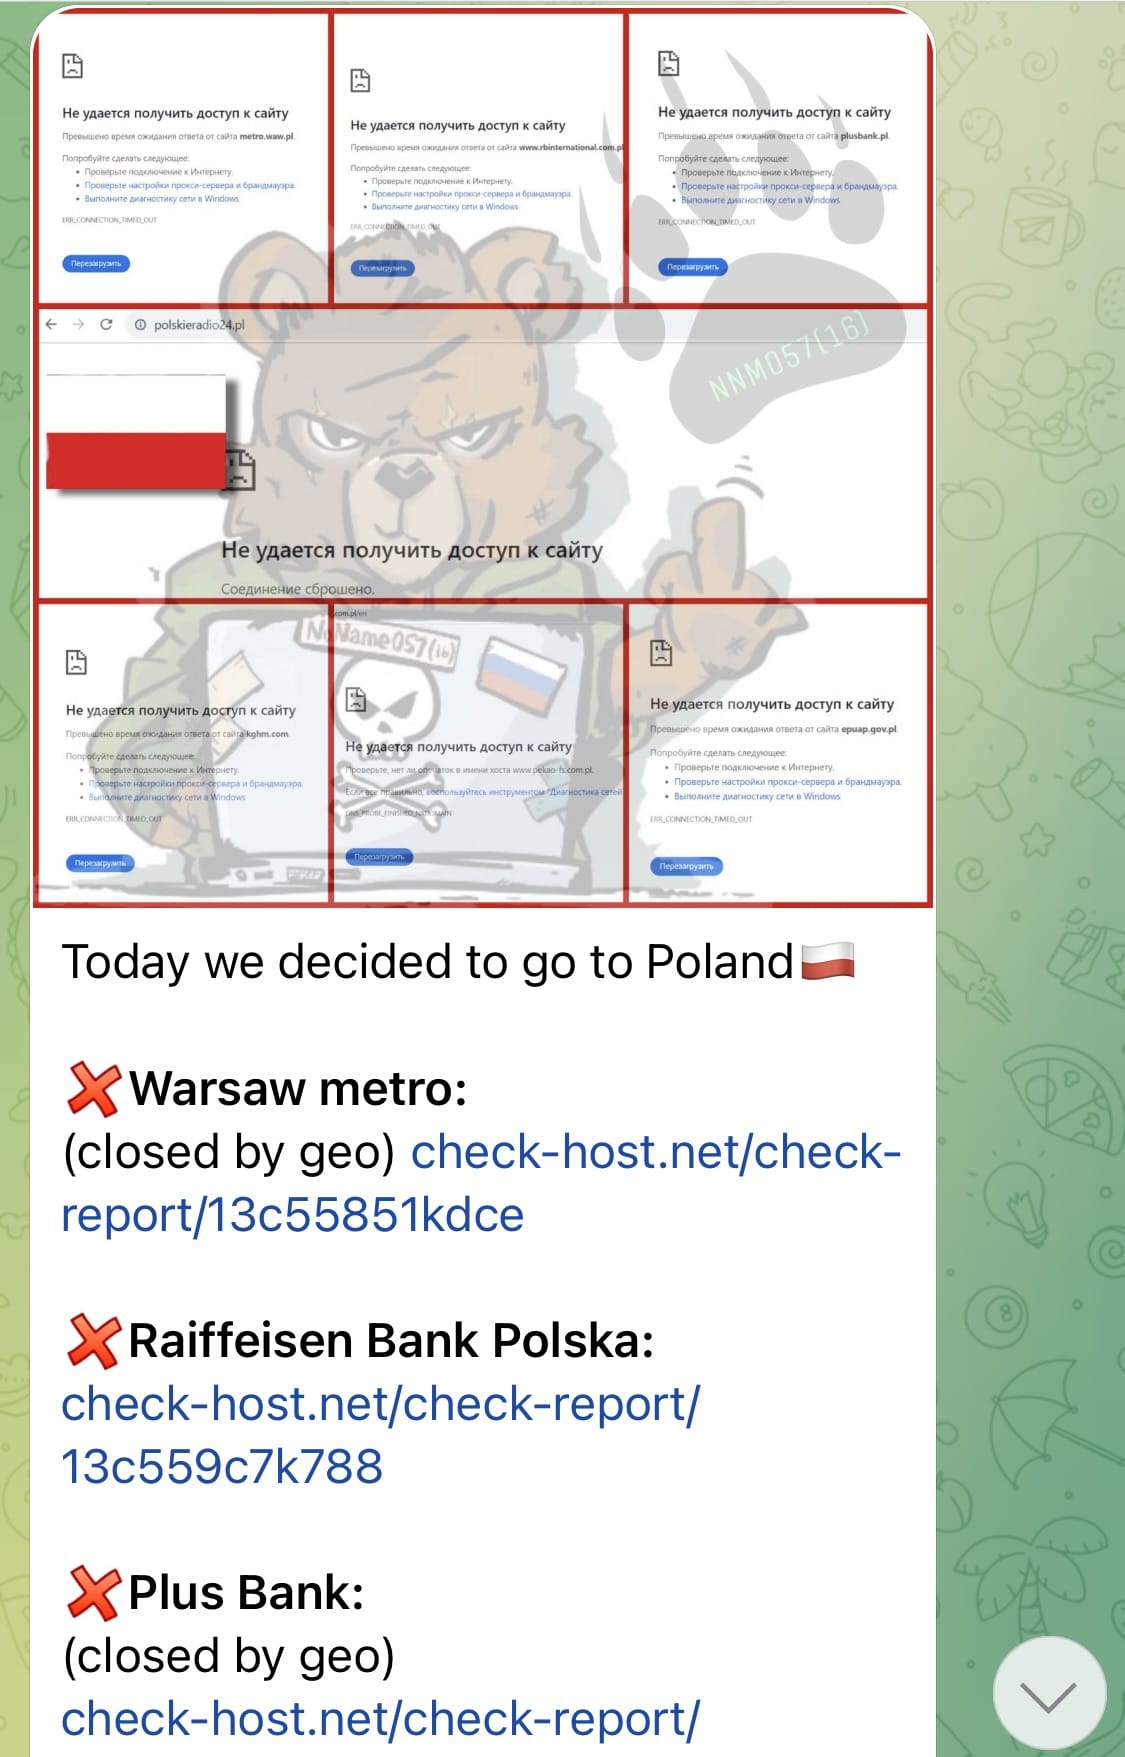 Rosyjscy haktywiści ponownie chwalą się atakami na polskie firmy